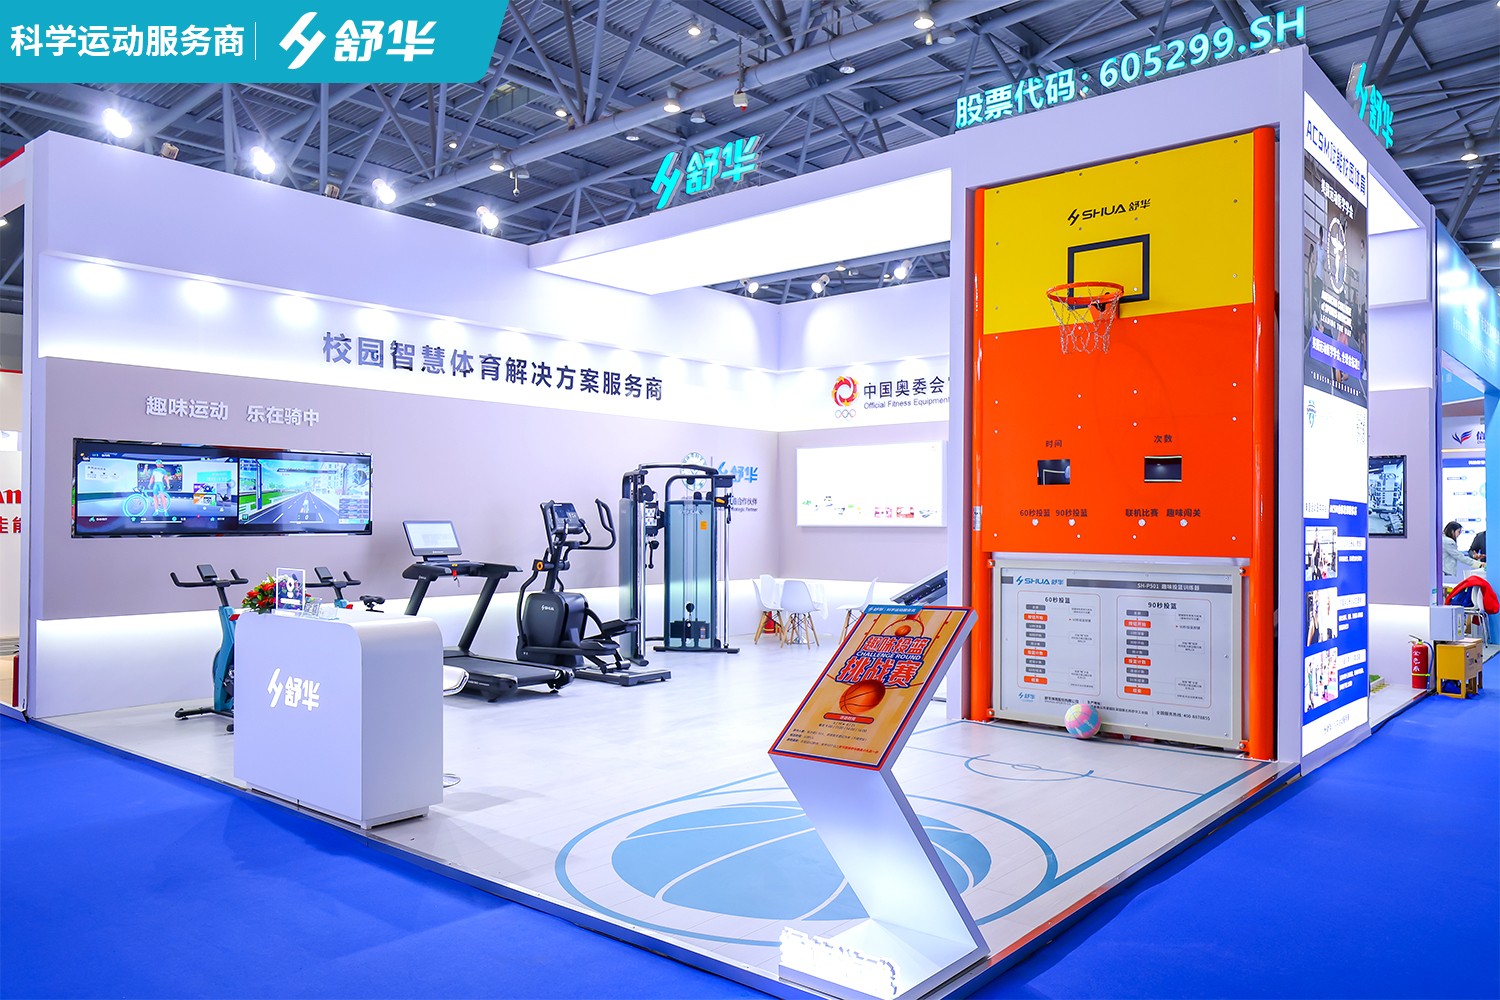 舒华体育亮相第83届中国教育装备展，校园智慧体育解决方案孕育未来栋梁